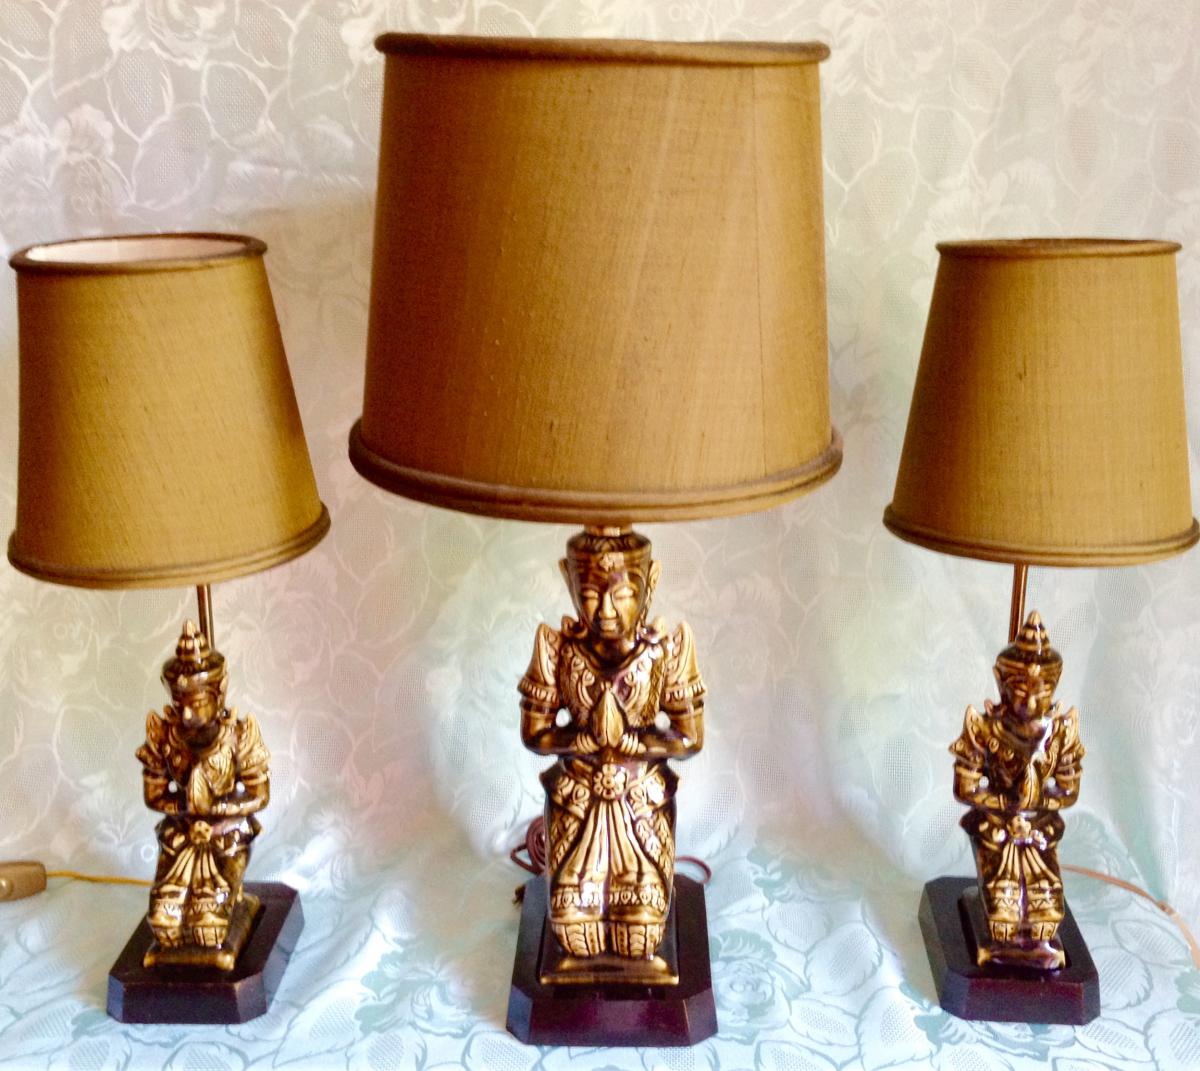 Trio Lamps "buddha" Ceramic Celadon